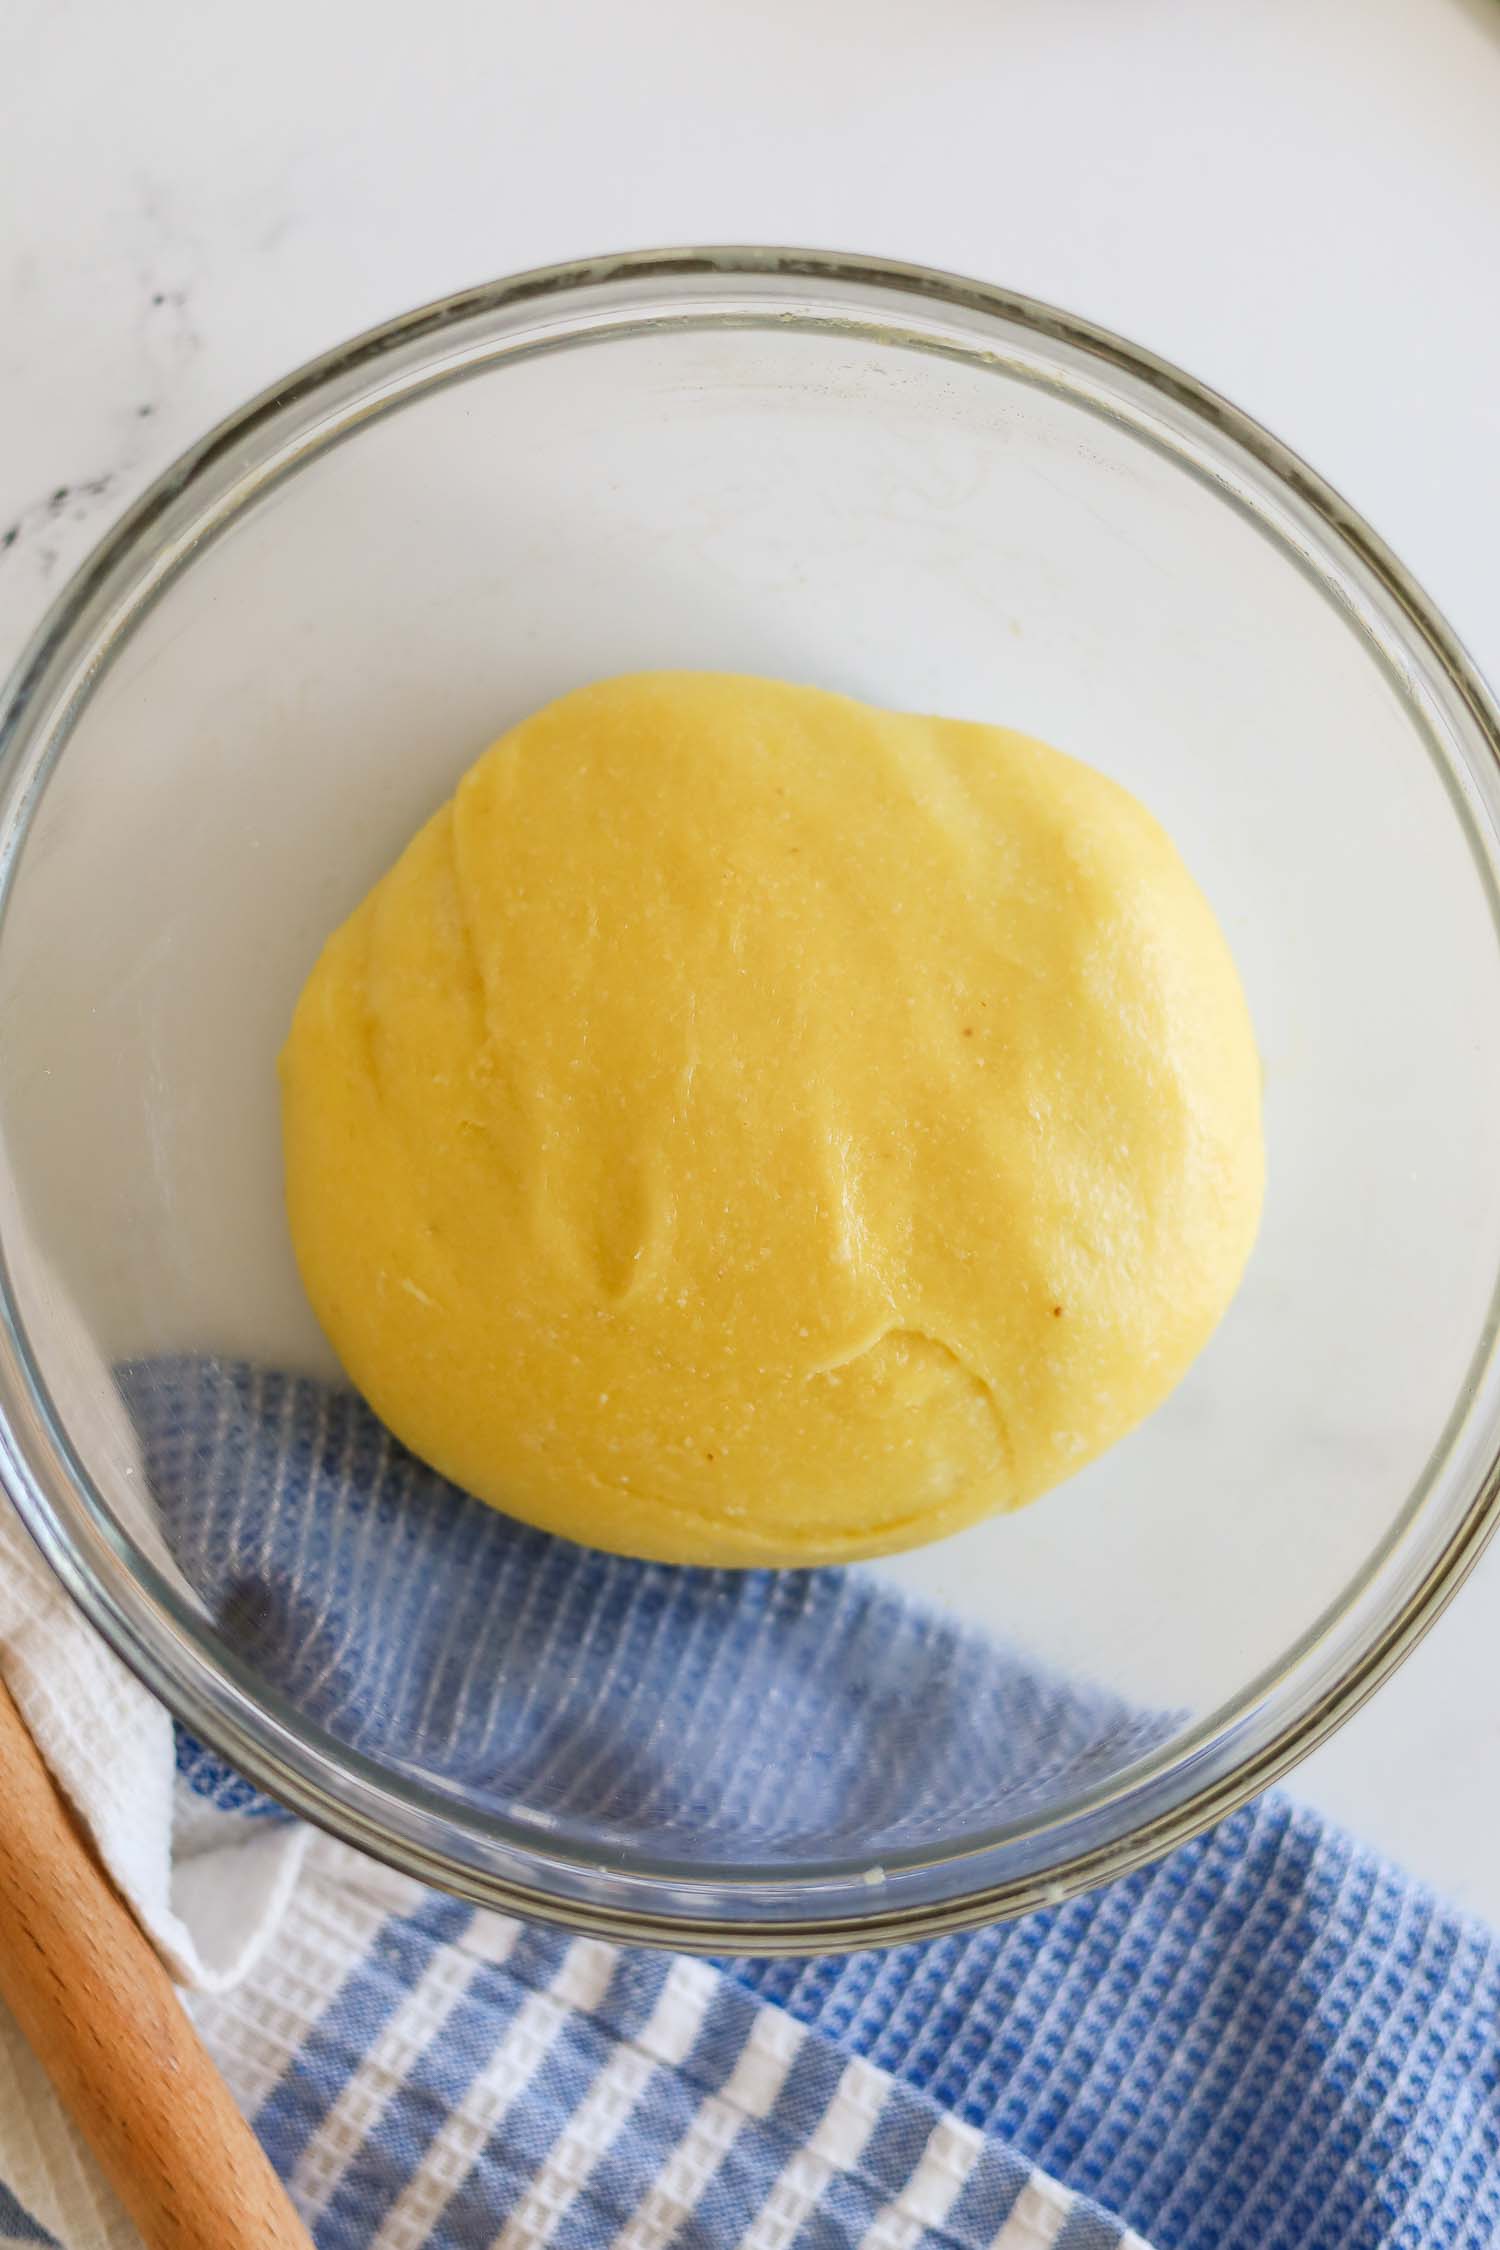 fathead dough in a glass bowl